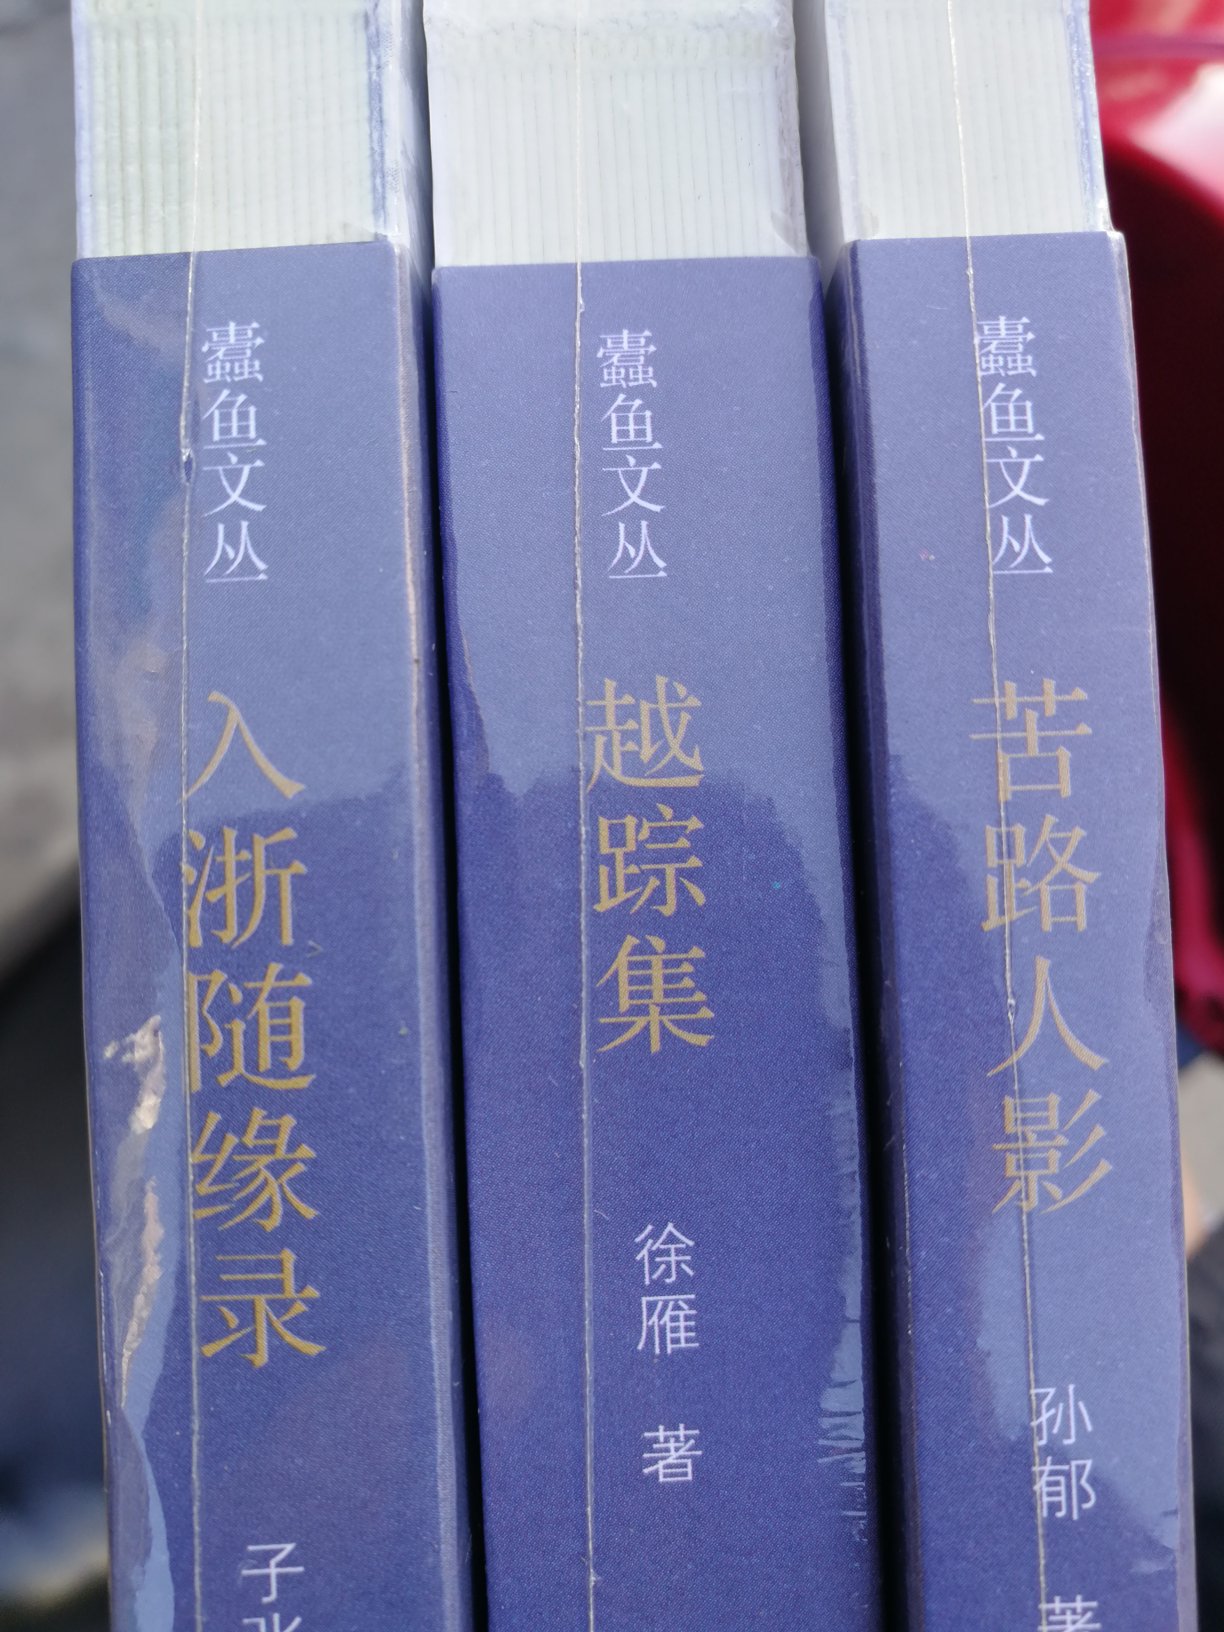 以作者历年在浙江的行踪为线索，记叙了若干书人书事，又以“外篇”的形式，发掘浙江各地的历史文化内蕴。